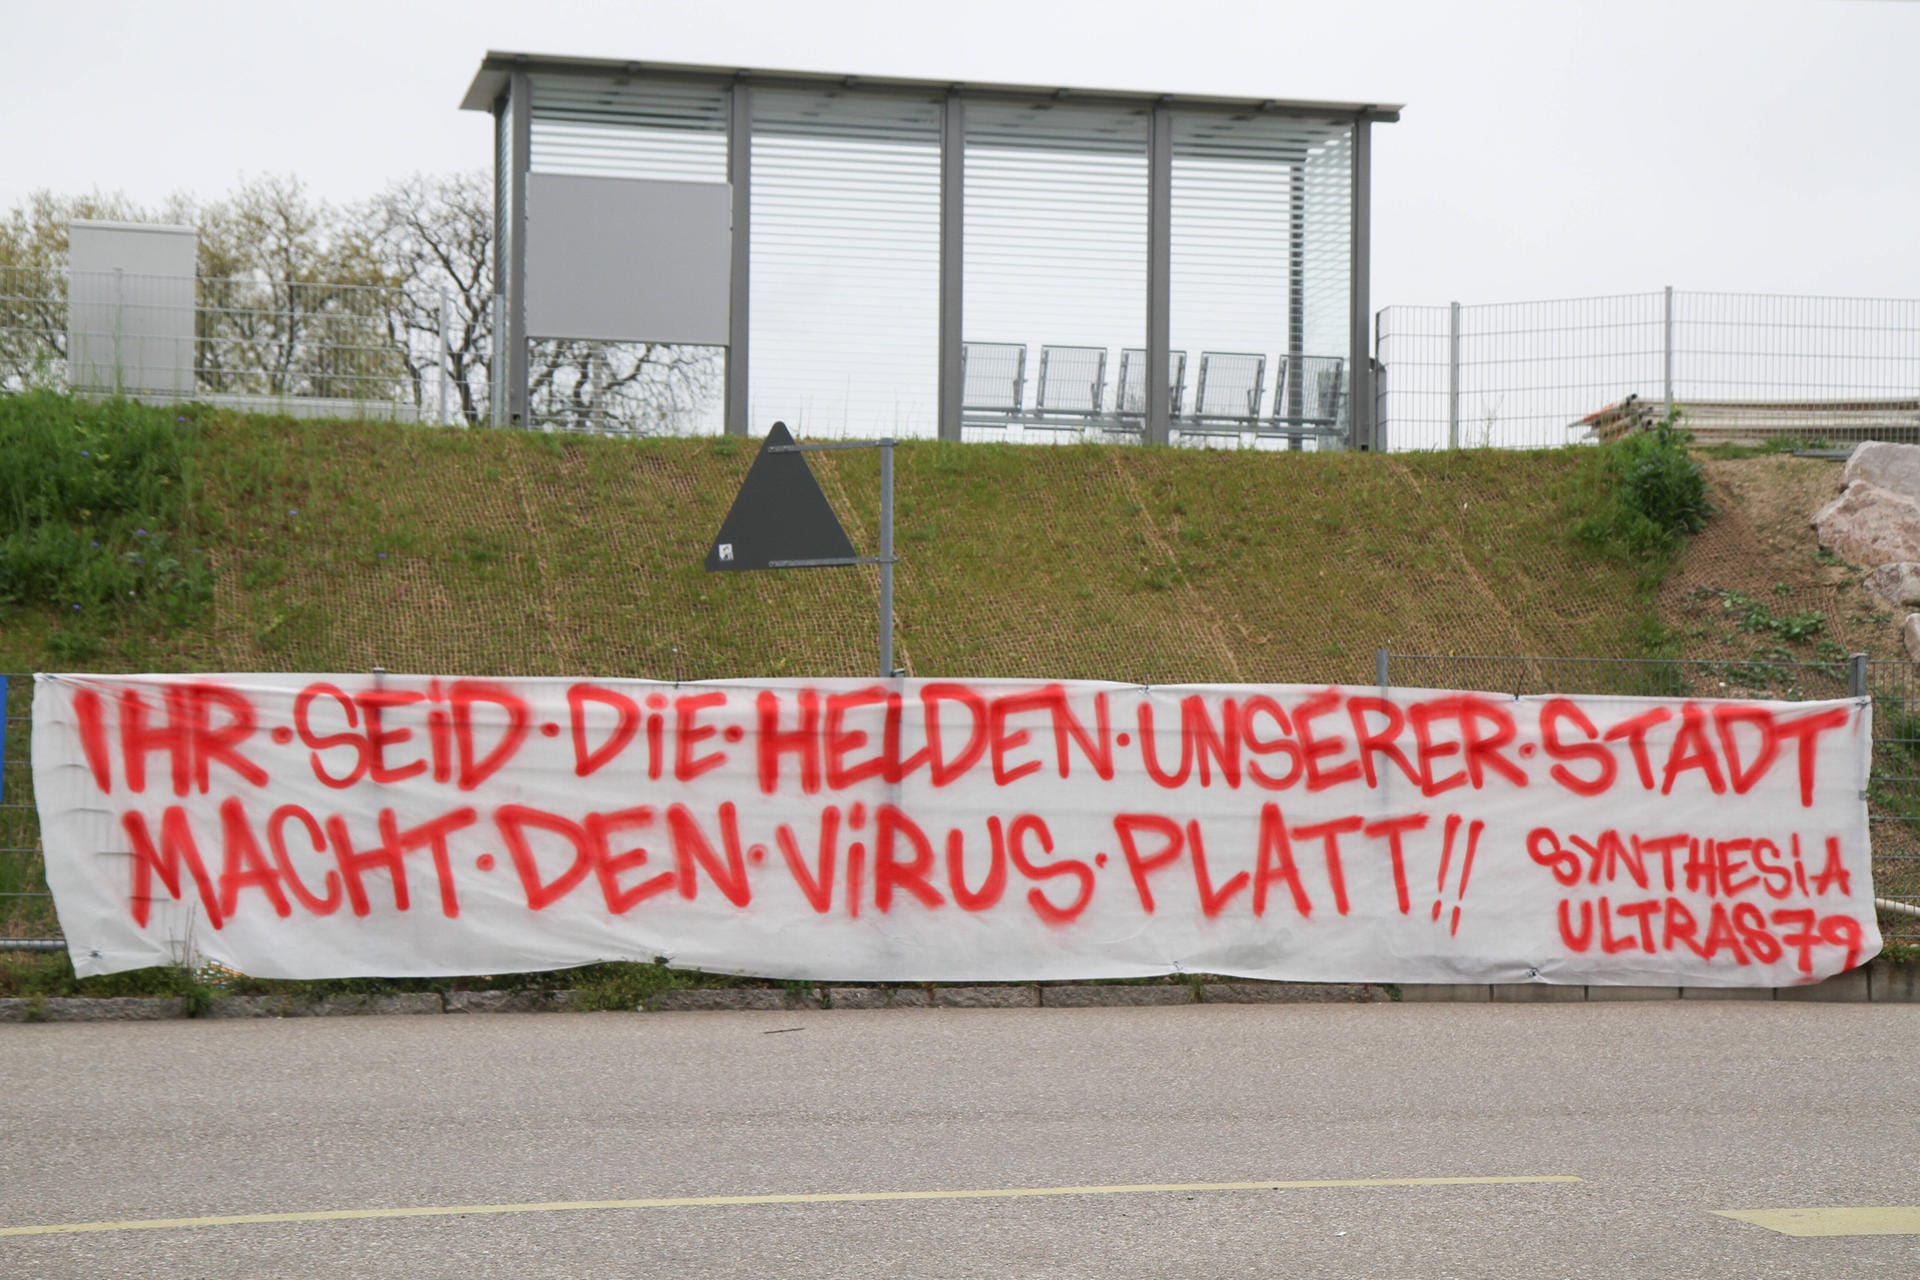 Die Ultragruppierung "Synthesia Ultras 79" vom SC Freiburg bedankt sich vor dem Universitätsklinikum Freiburg. "Ihr seid die Helden unserer Stadt. Macht den Virus platt!!", heißt es dort.